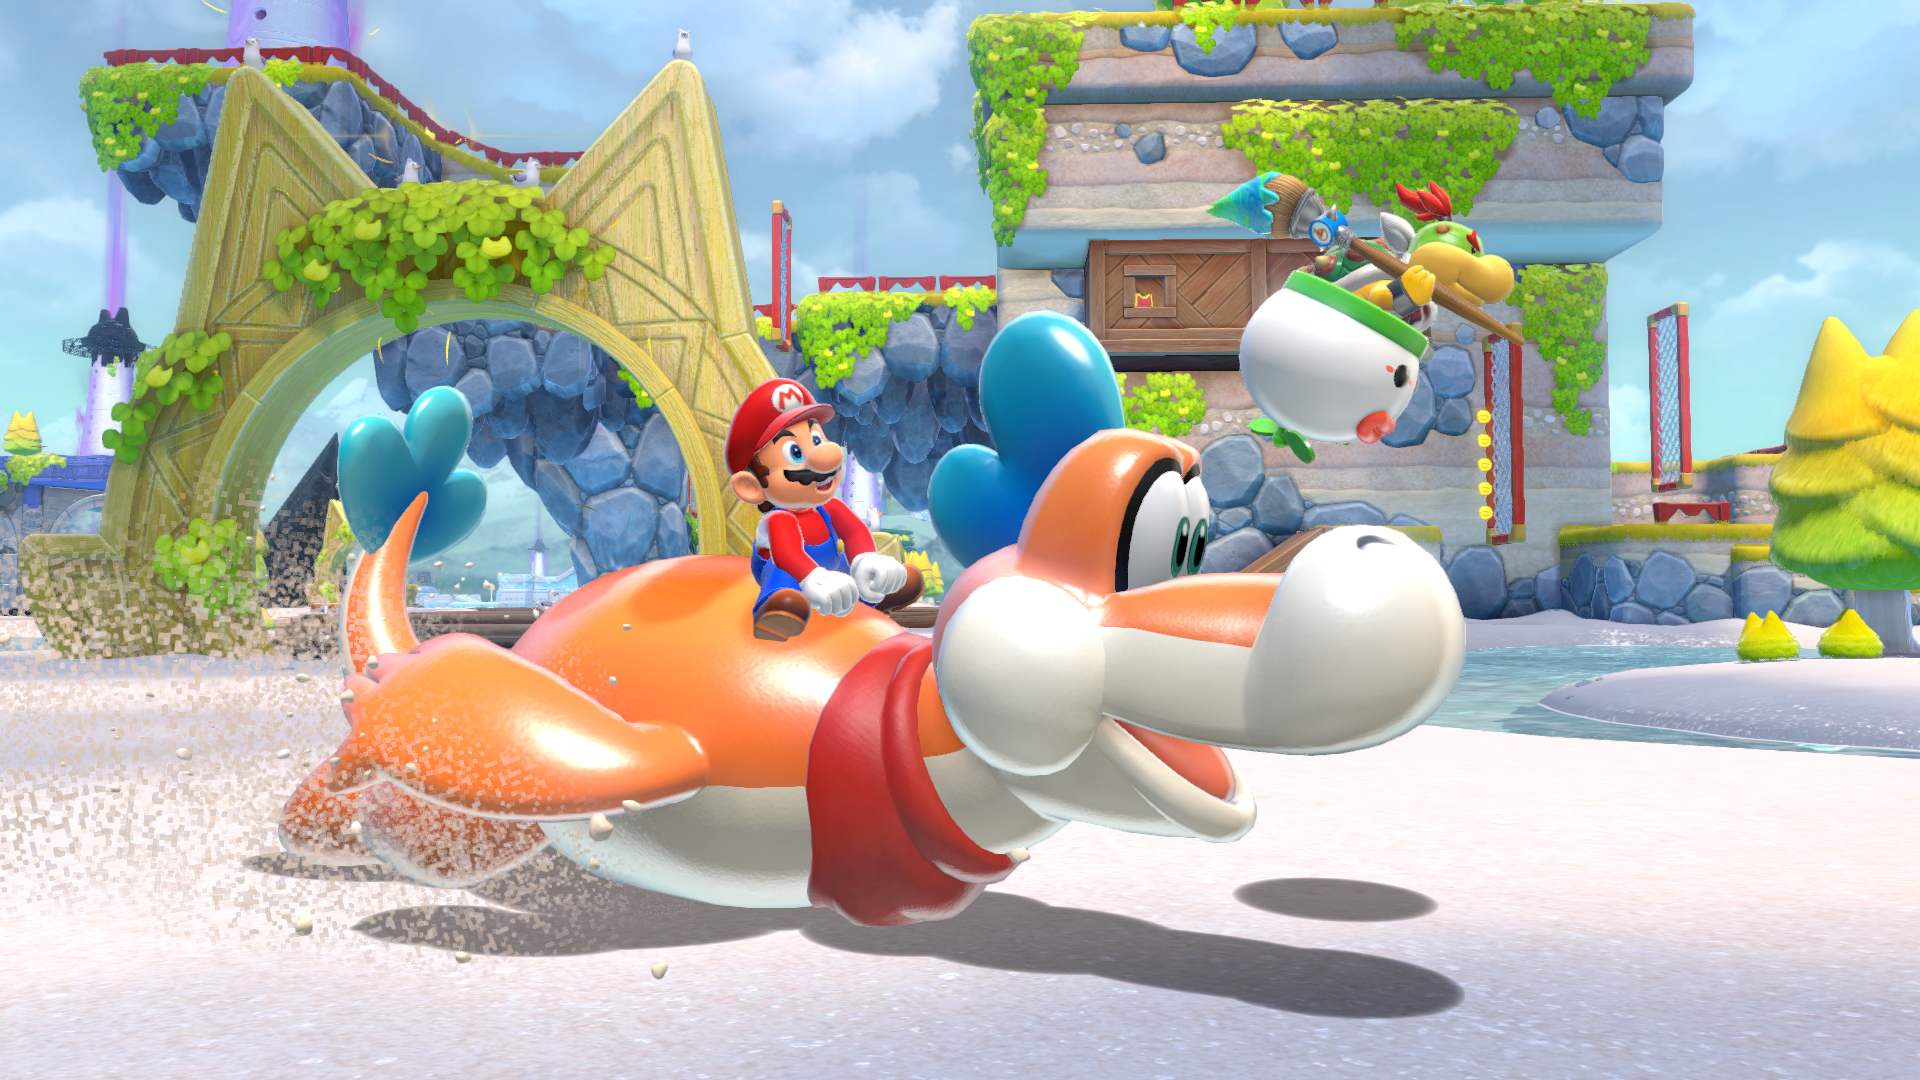 Este vídeo diz-te tudo sobre o Mario Gato e Super Mario 3D World +